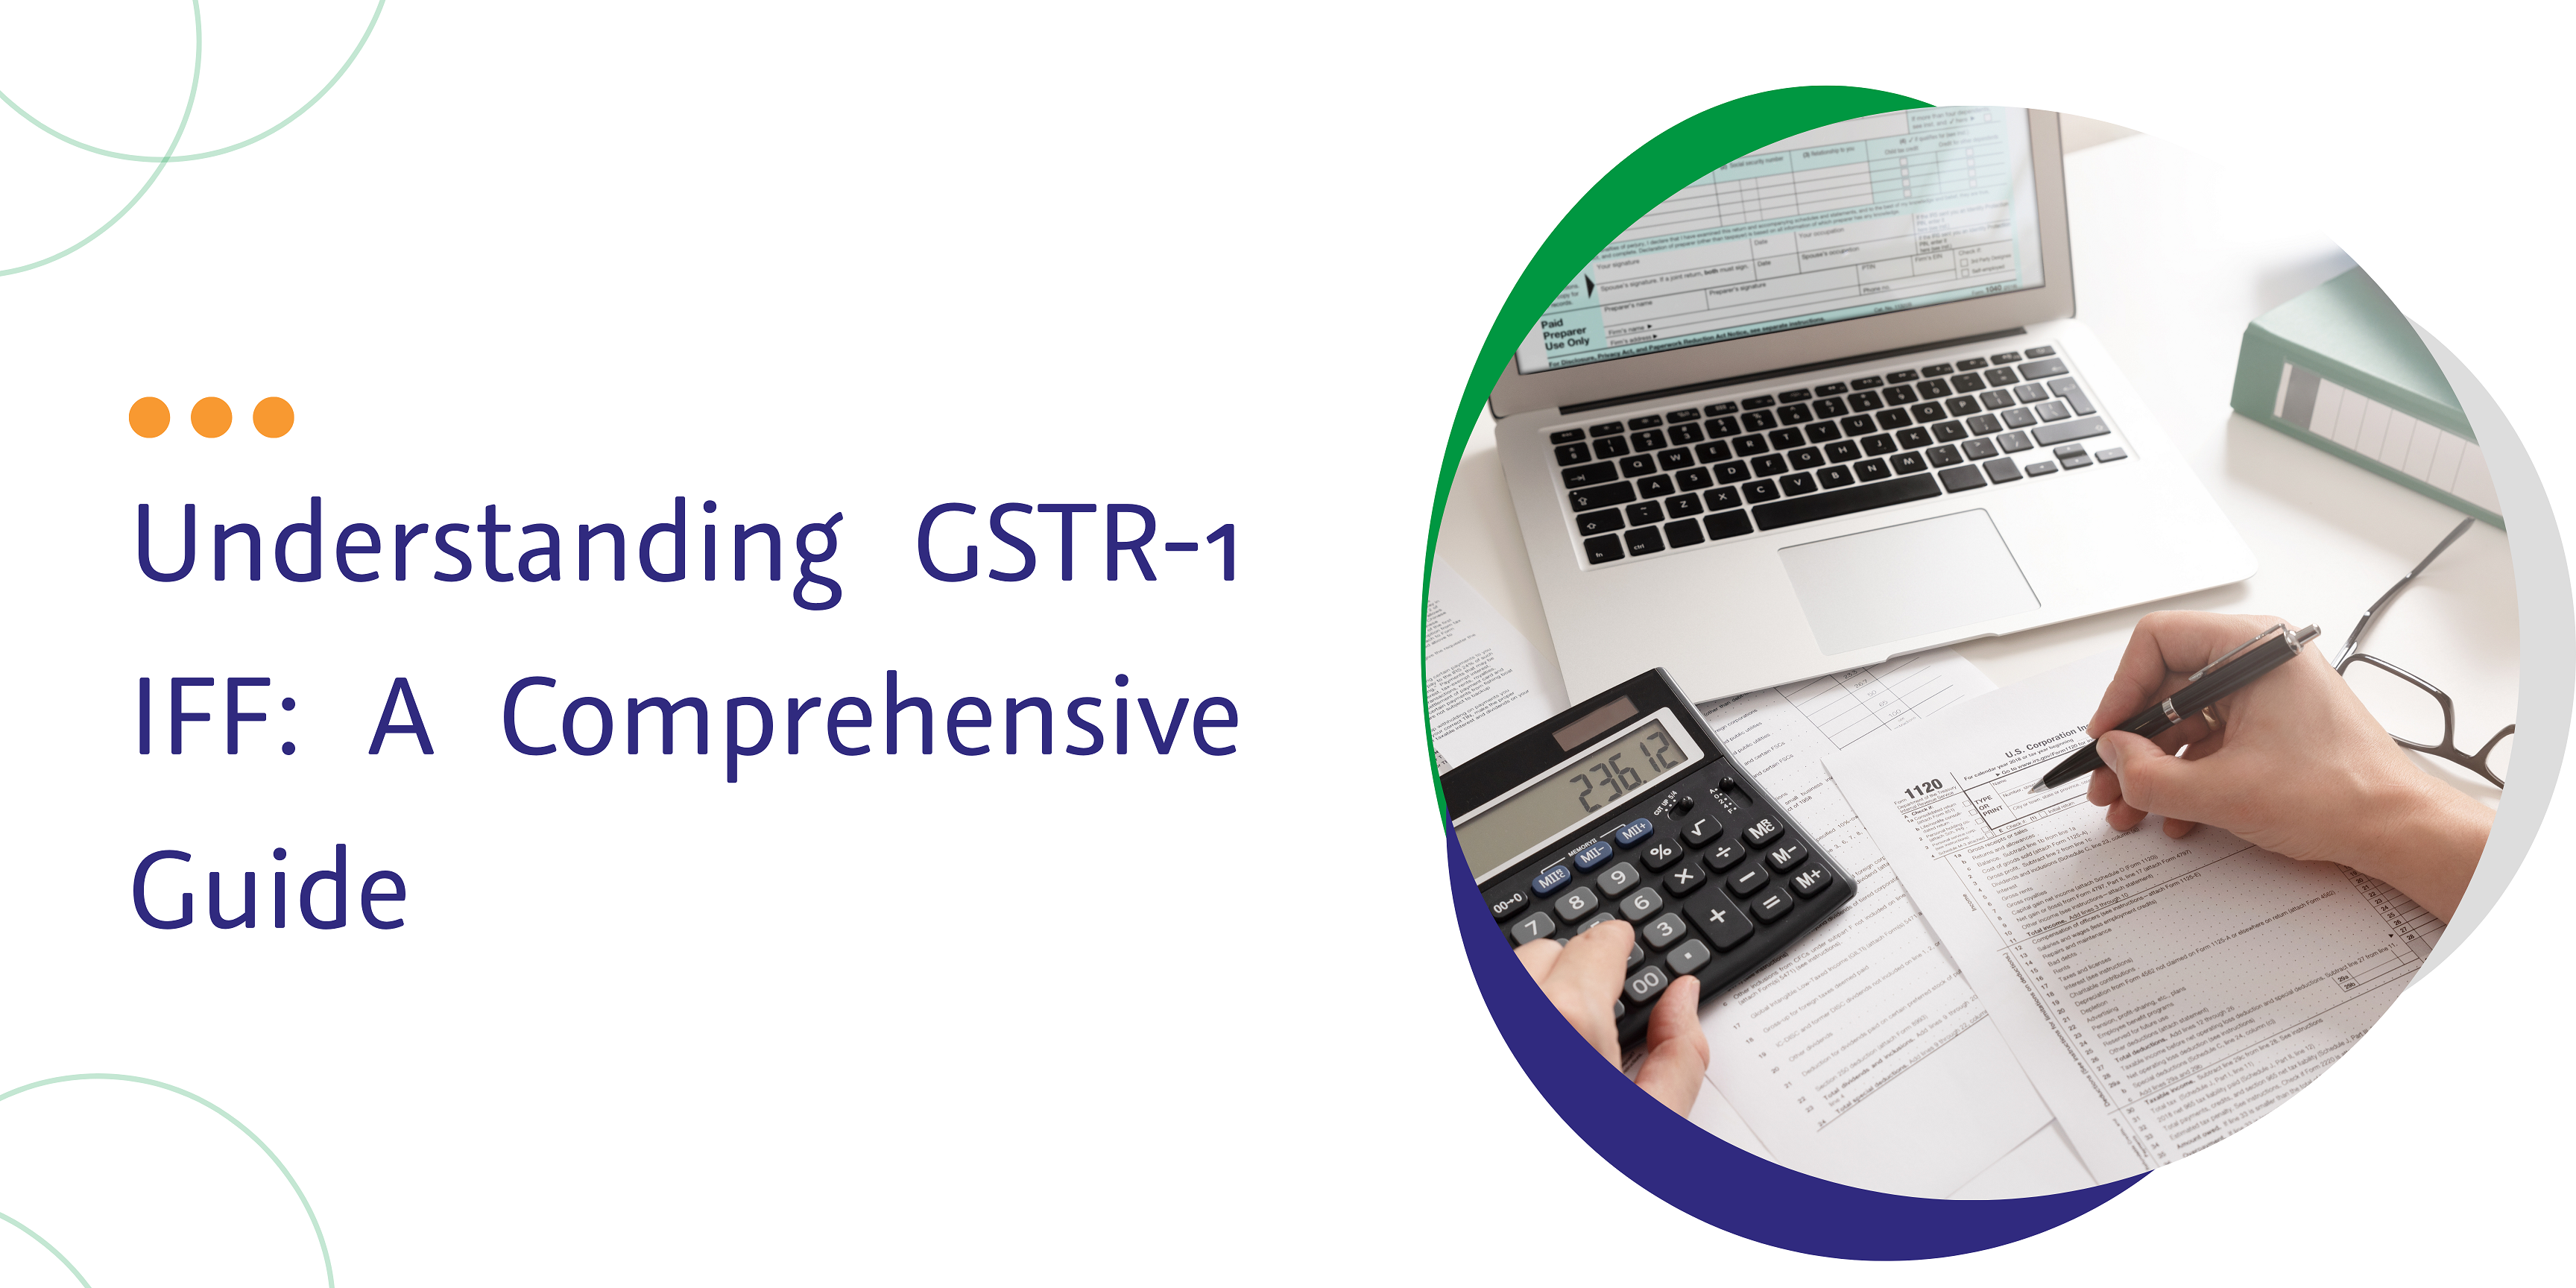 understanding gstr-1 iif a comprehensive guide